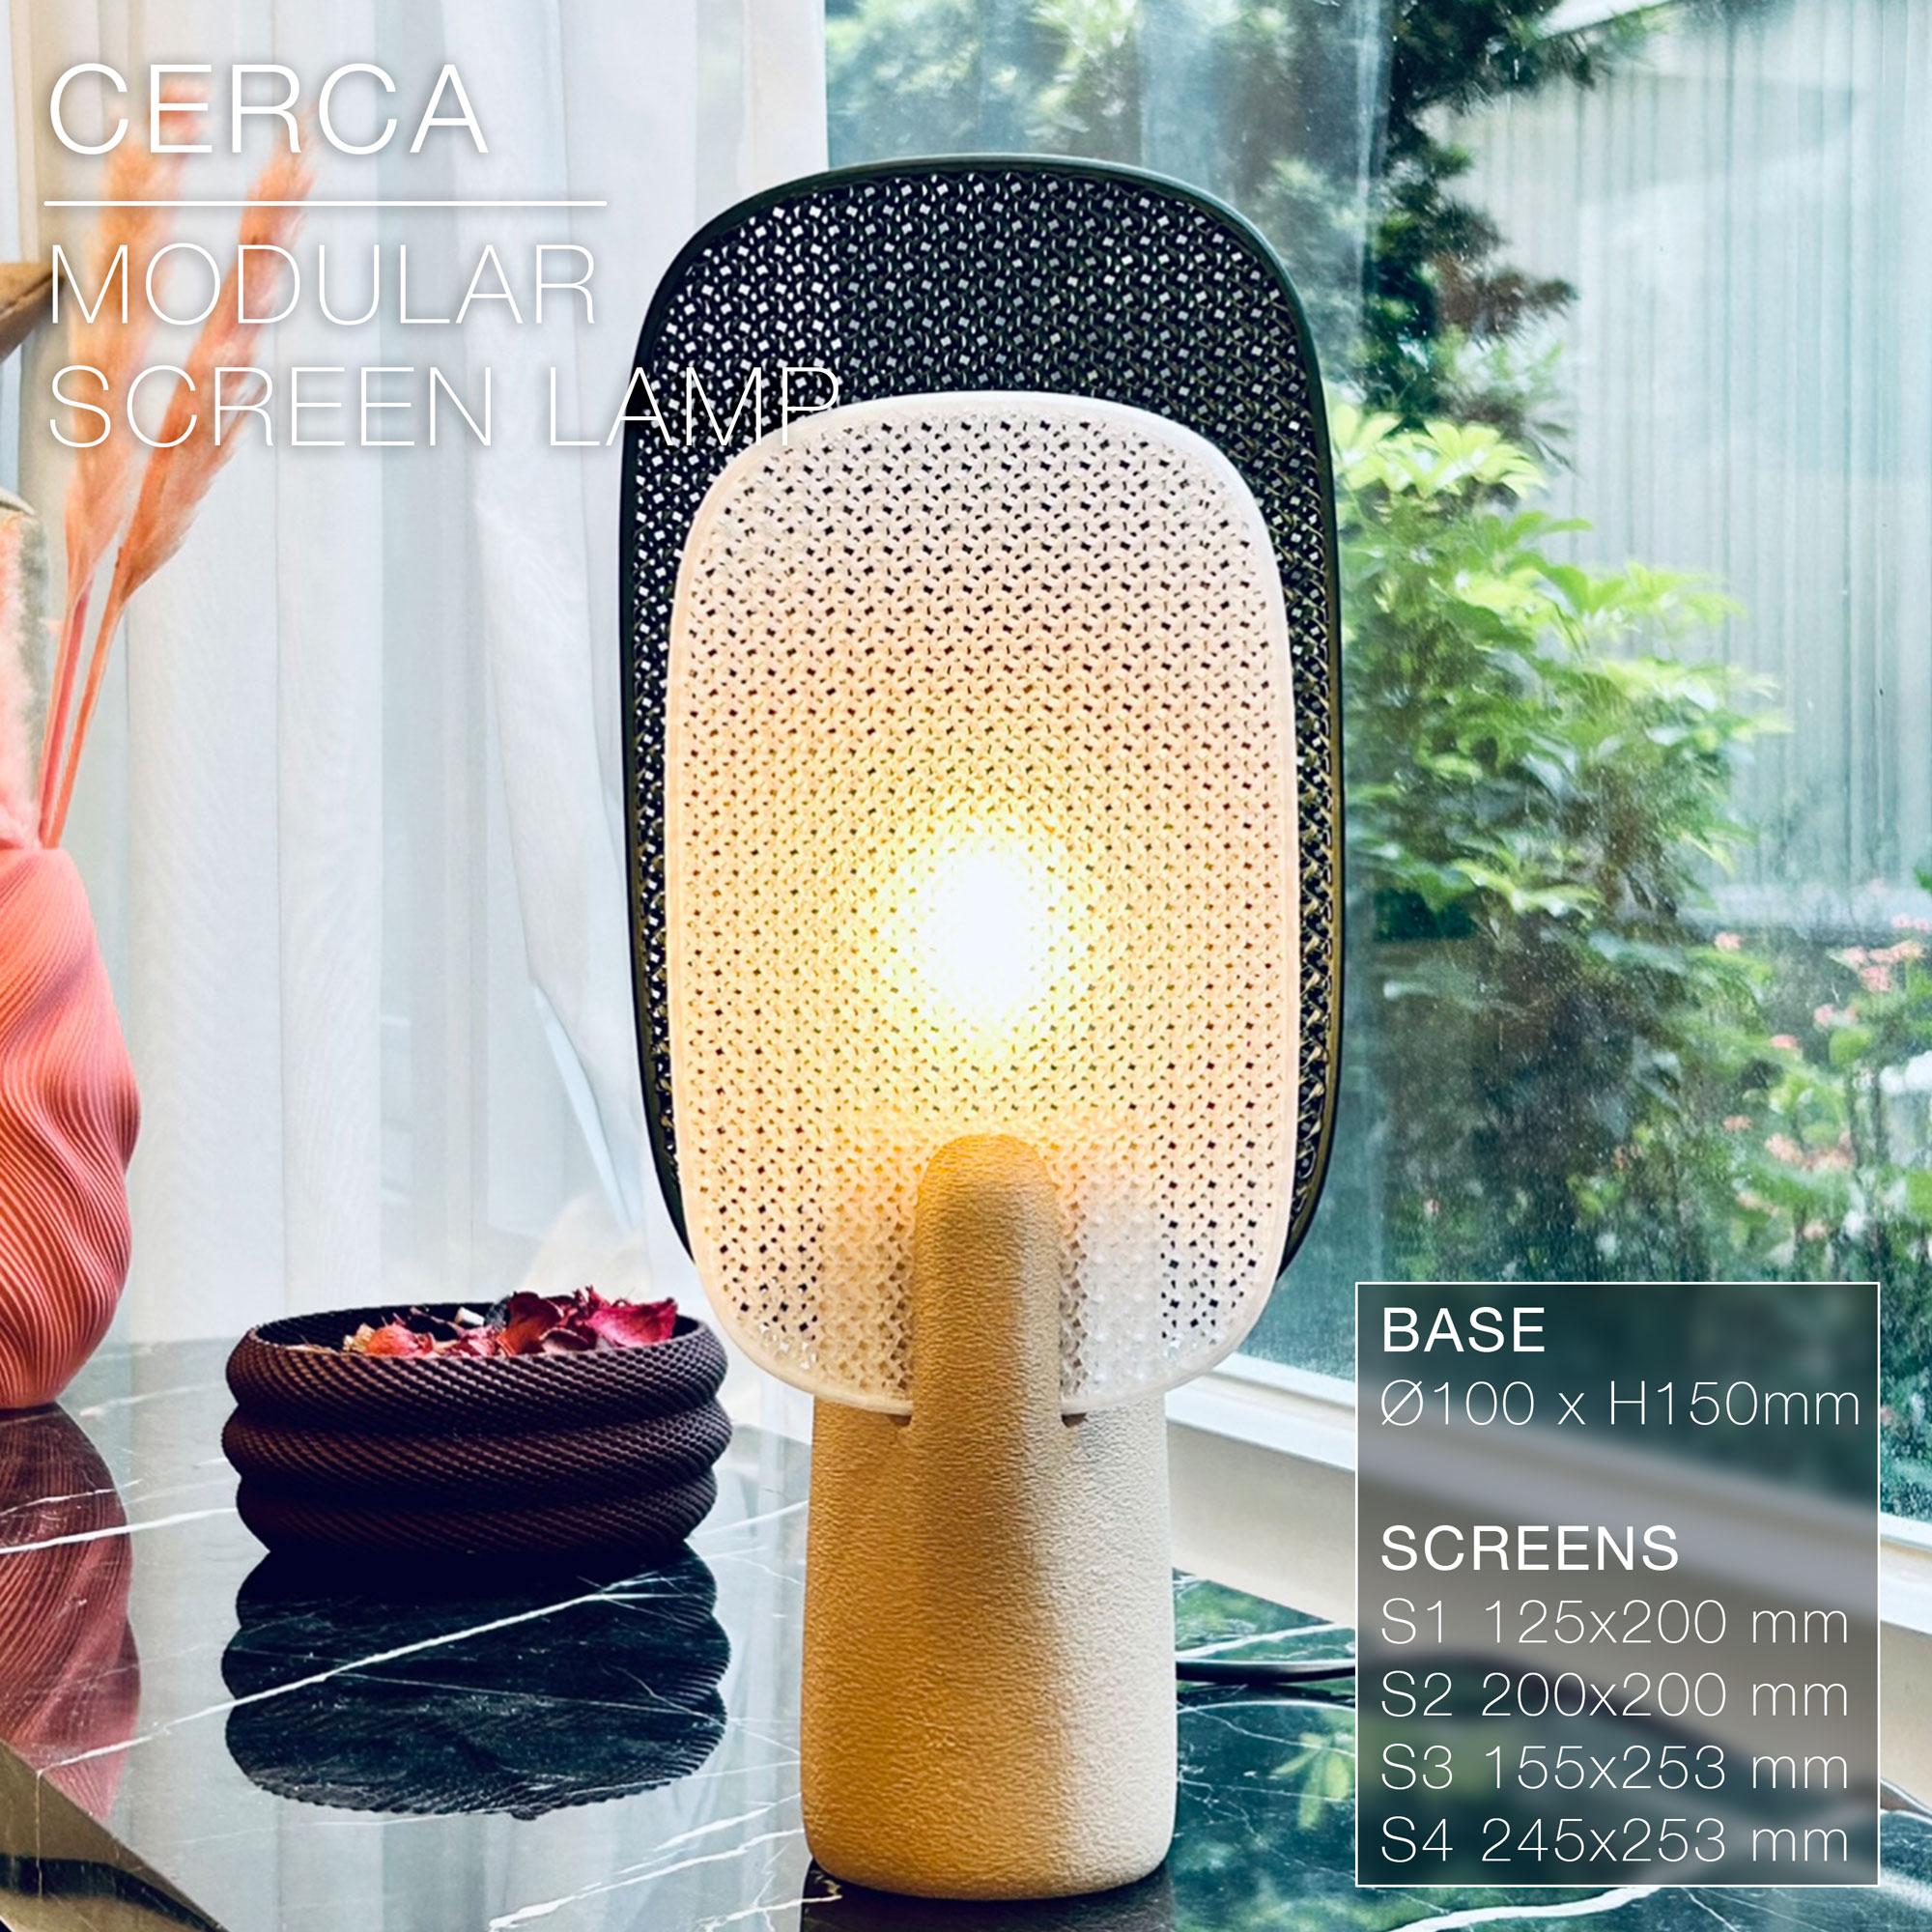 CERCA |  Modular Screen Table Lamp E14, E26, E27 3d model